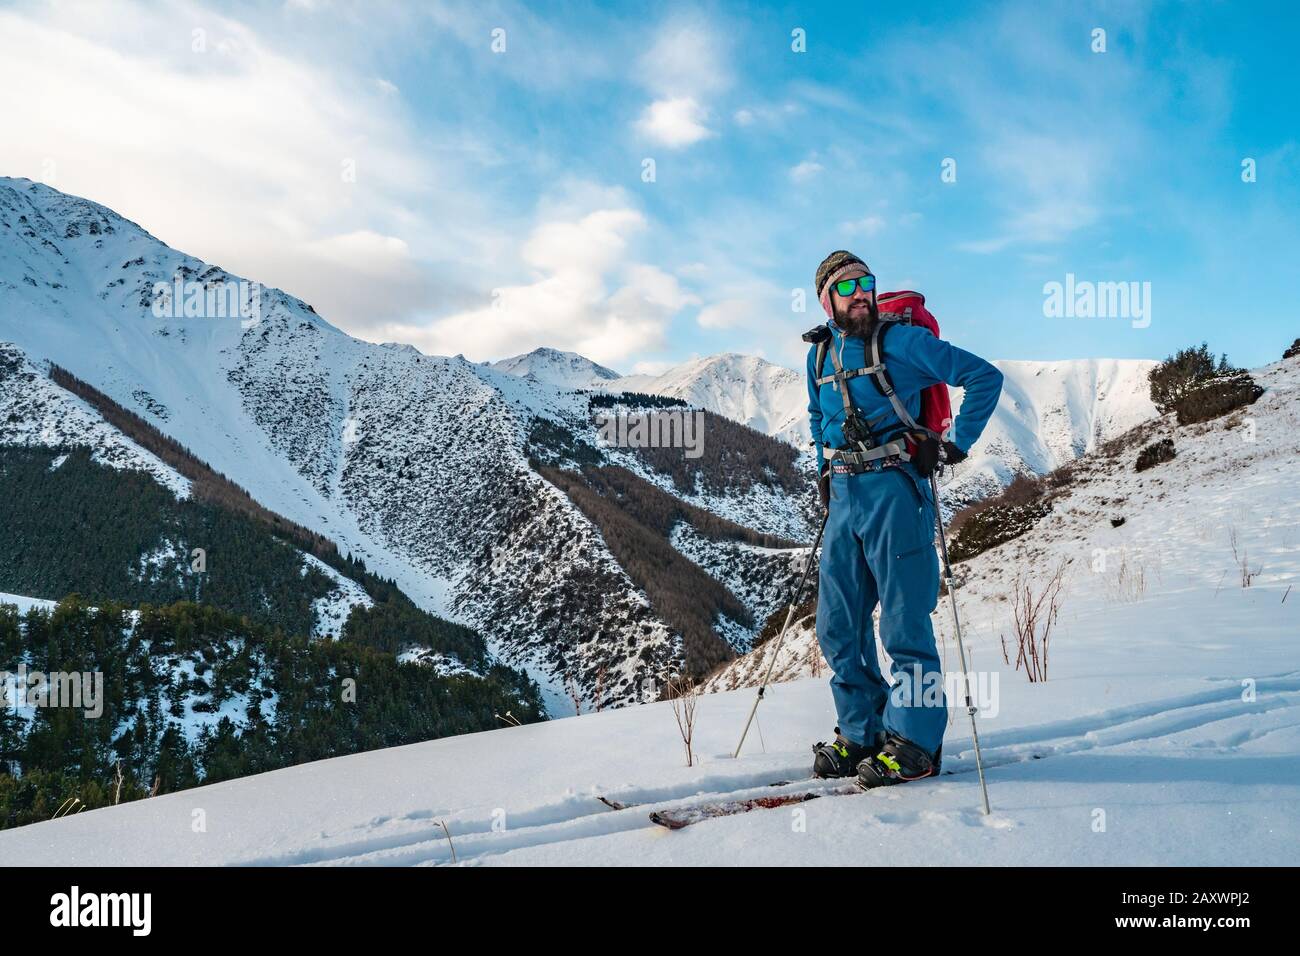 Un hombre se dedica a hacer excursiones de esquí en el splitboarding. Amanecer en las montañas. Kirguistán Foto de stock